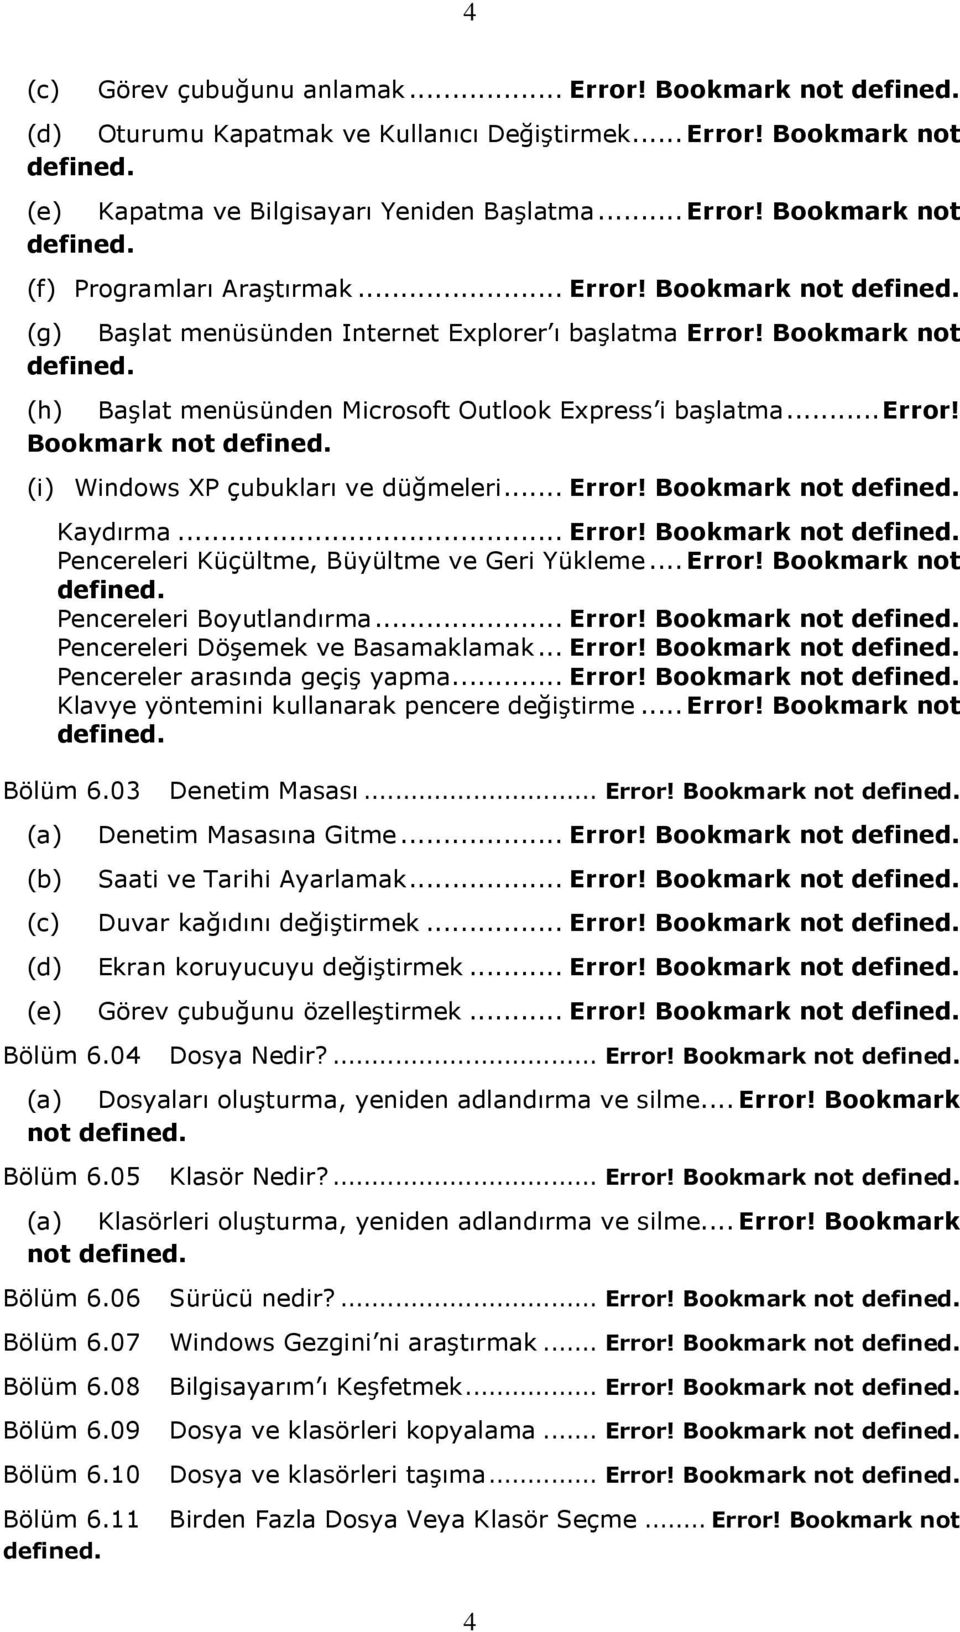 .. Error! Bookmark not defined. Kaydırma... Error! Bookmark not defined. Pencereleri Küçültme, Büyültme ve Geri Yükleme... Error! Bookmark not defined. Pencereleri Boyutlandırma... Error! Bookmark not defined. Pencereleri Döşemek ve Basamaklamak.